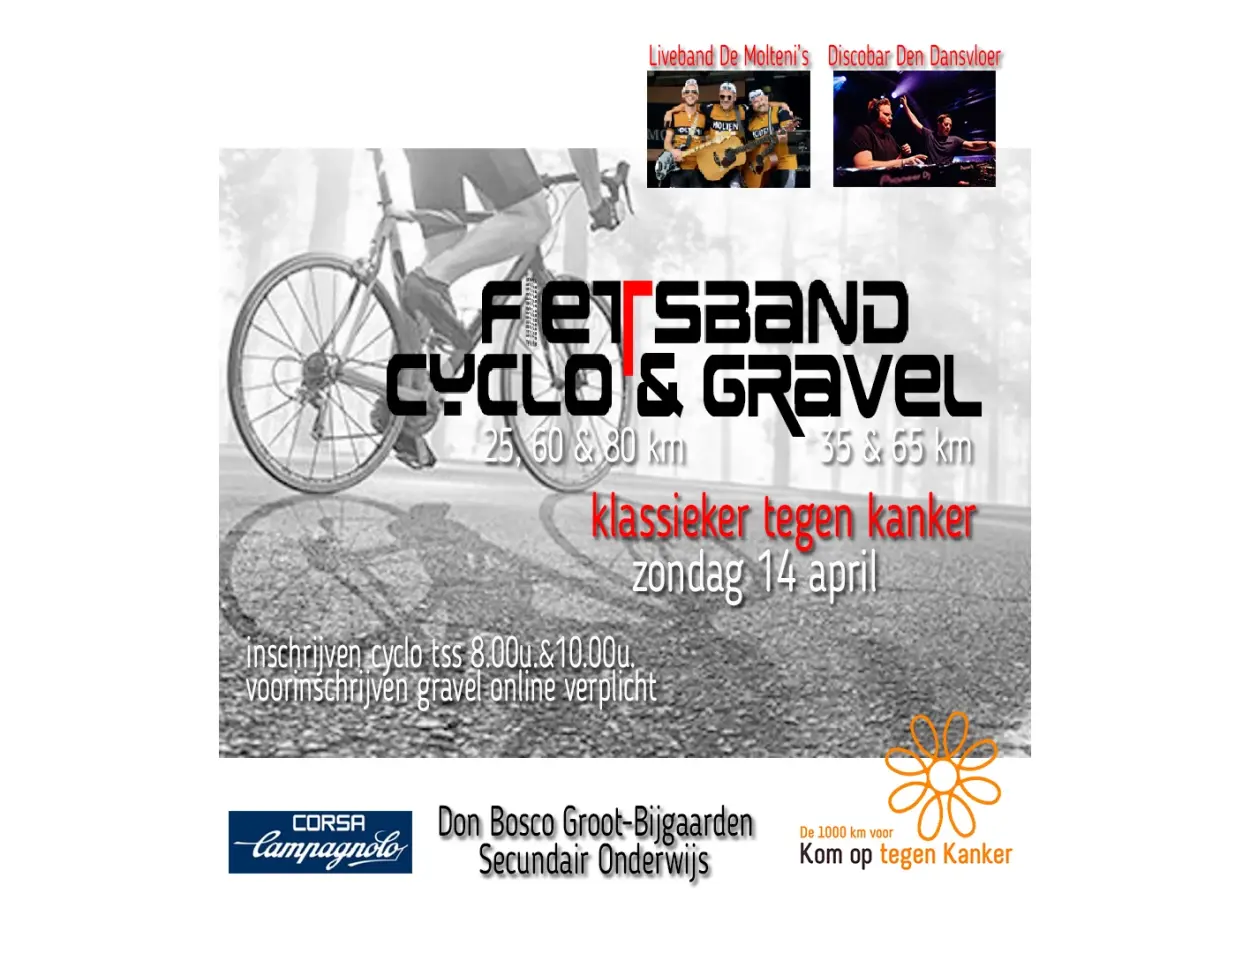 Fietsband Cyclo en Gravel banner